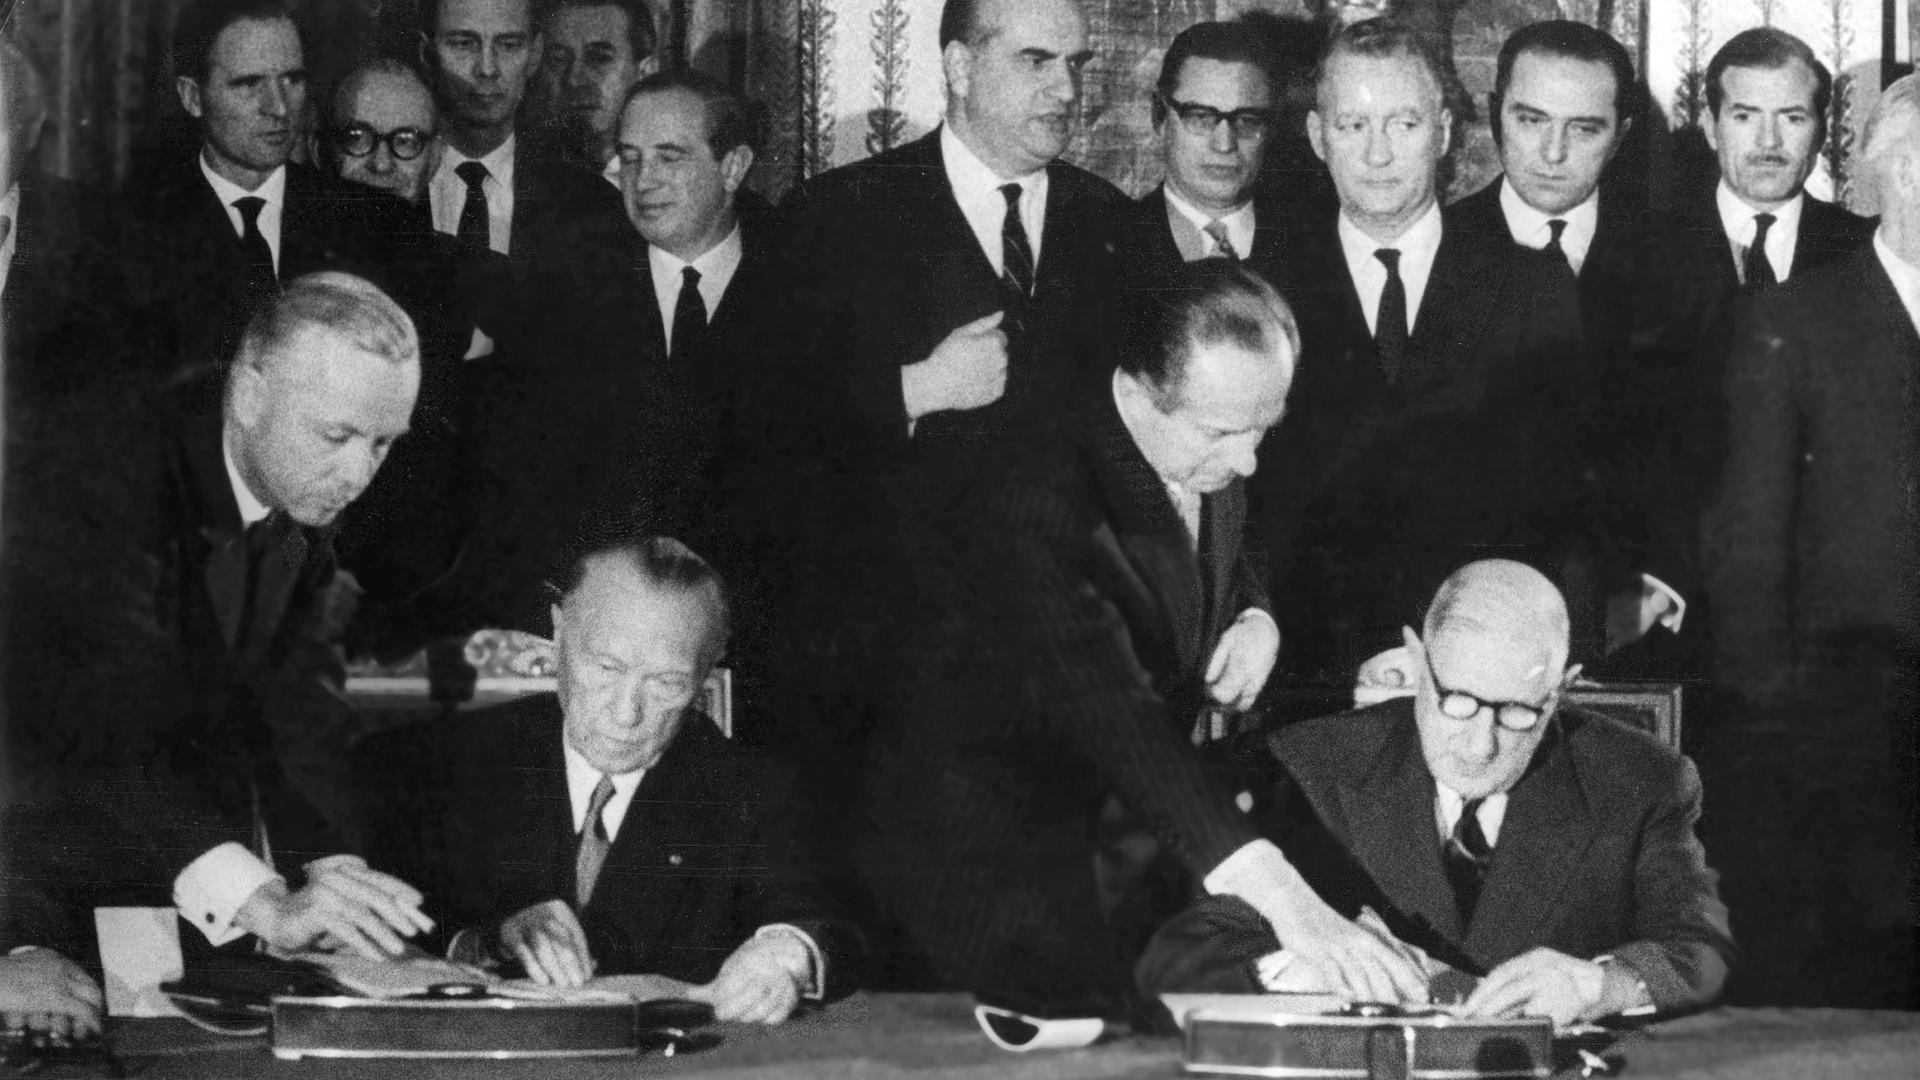 Ein schwarz weißes Foto vom 22. Januar 1963 : Zwei Männer sitzen nebeneinander an einem Tisch und unterzeichnen jeweils ein Dokument. Hinter ihnen stehen sehr viele Männer in Anzügen.